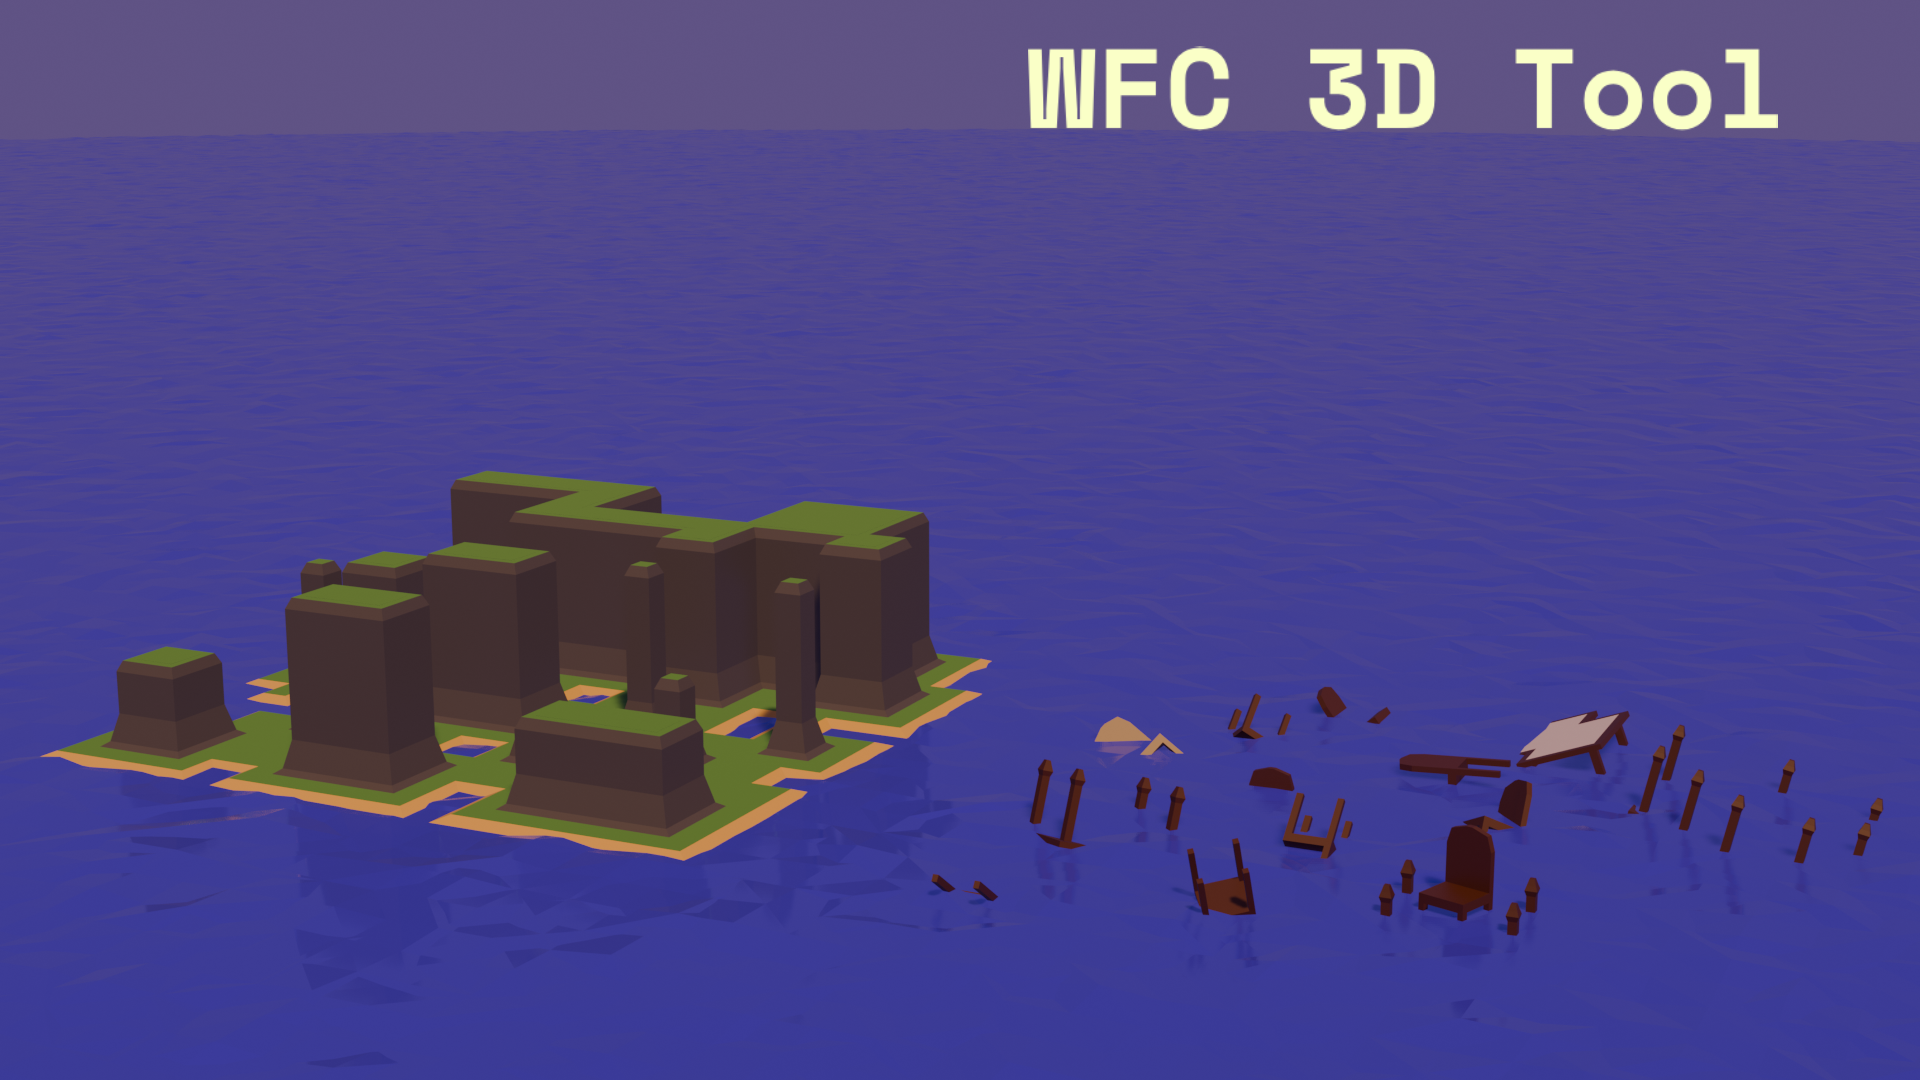 WFC 3D Tool